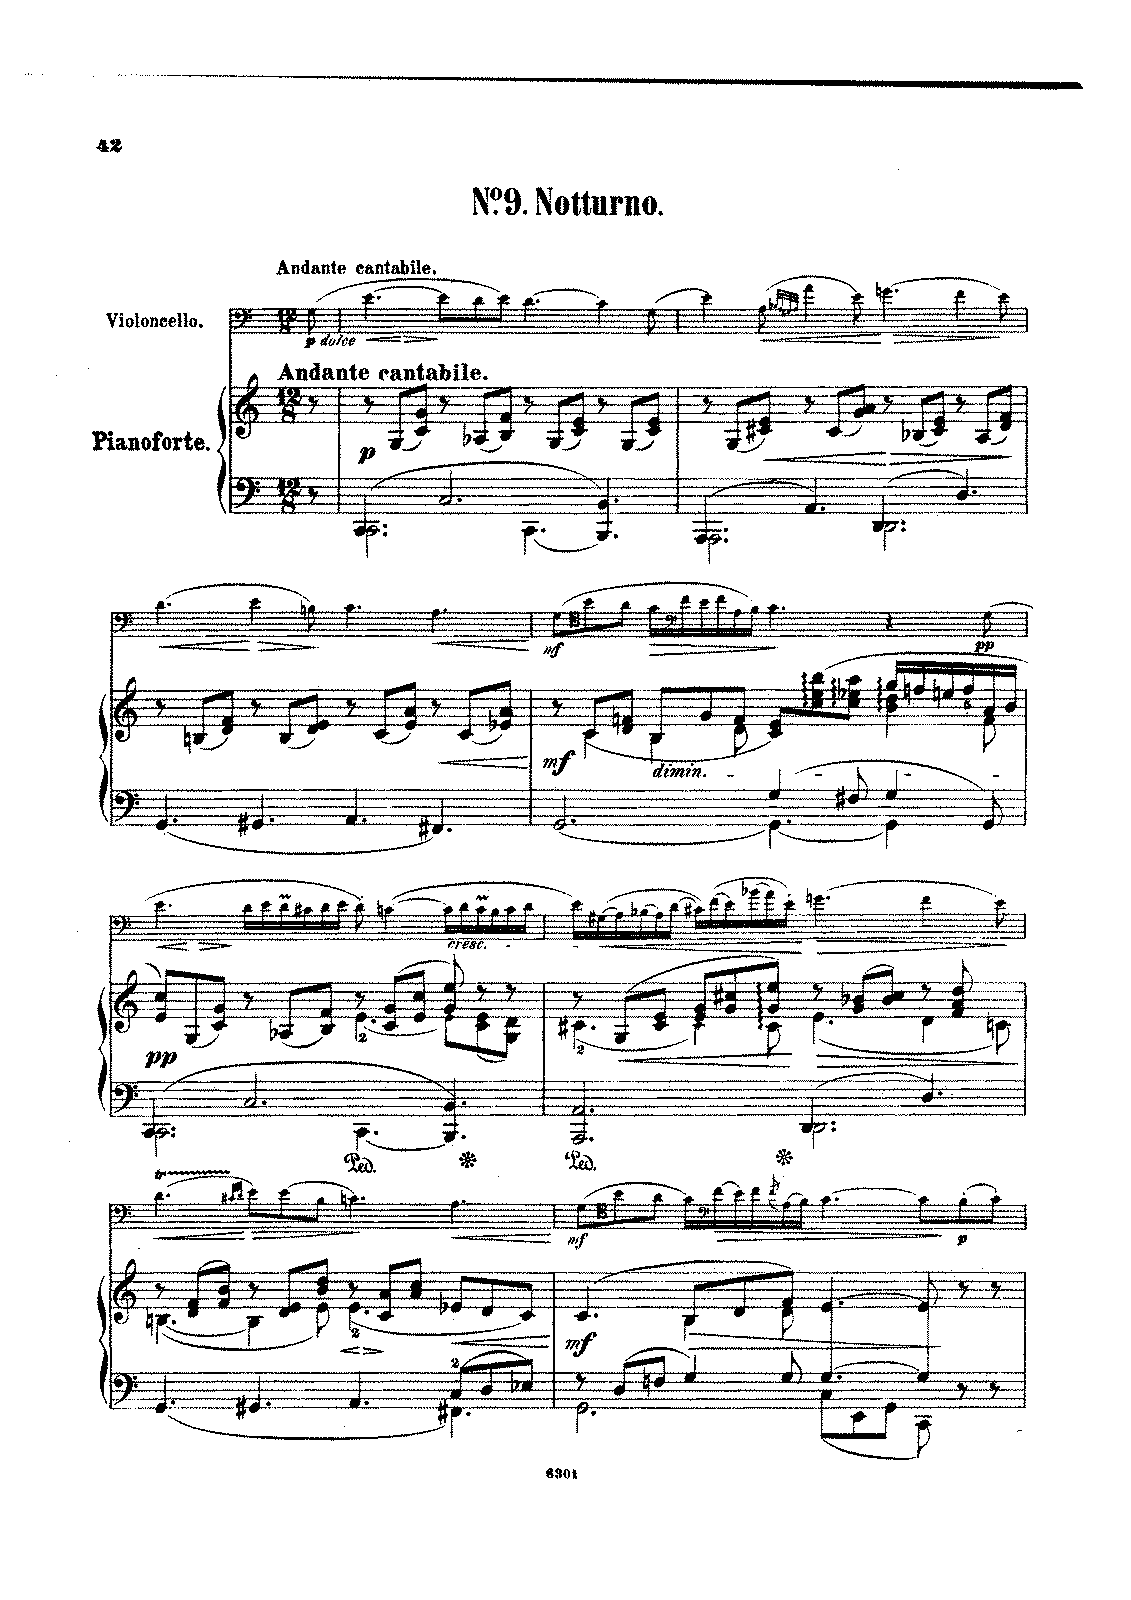 nocturne f. chopin : nocturne op. 9 no. 1 in b flat minor pdf